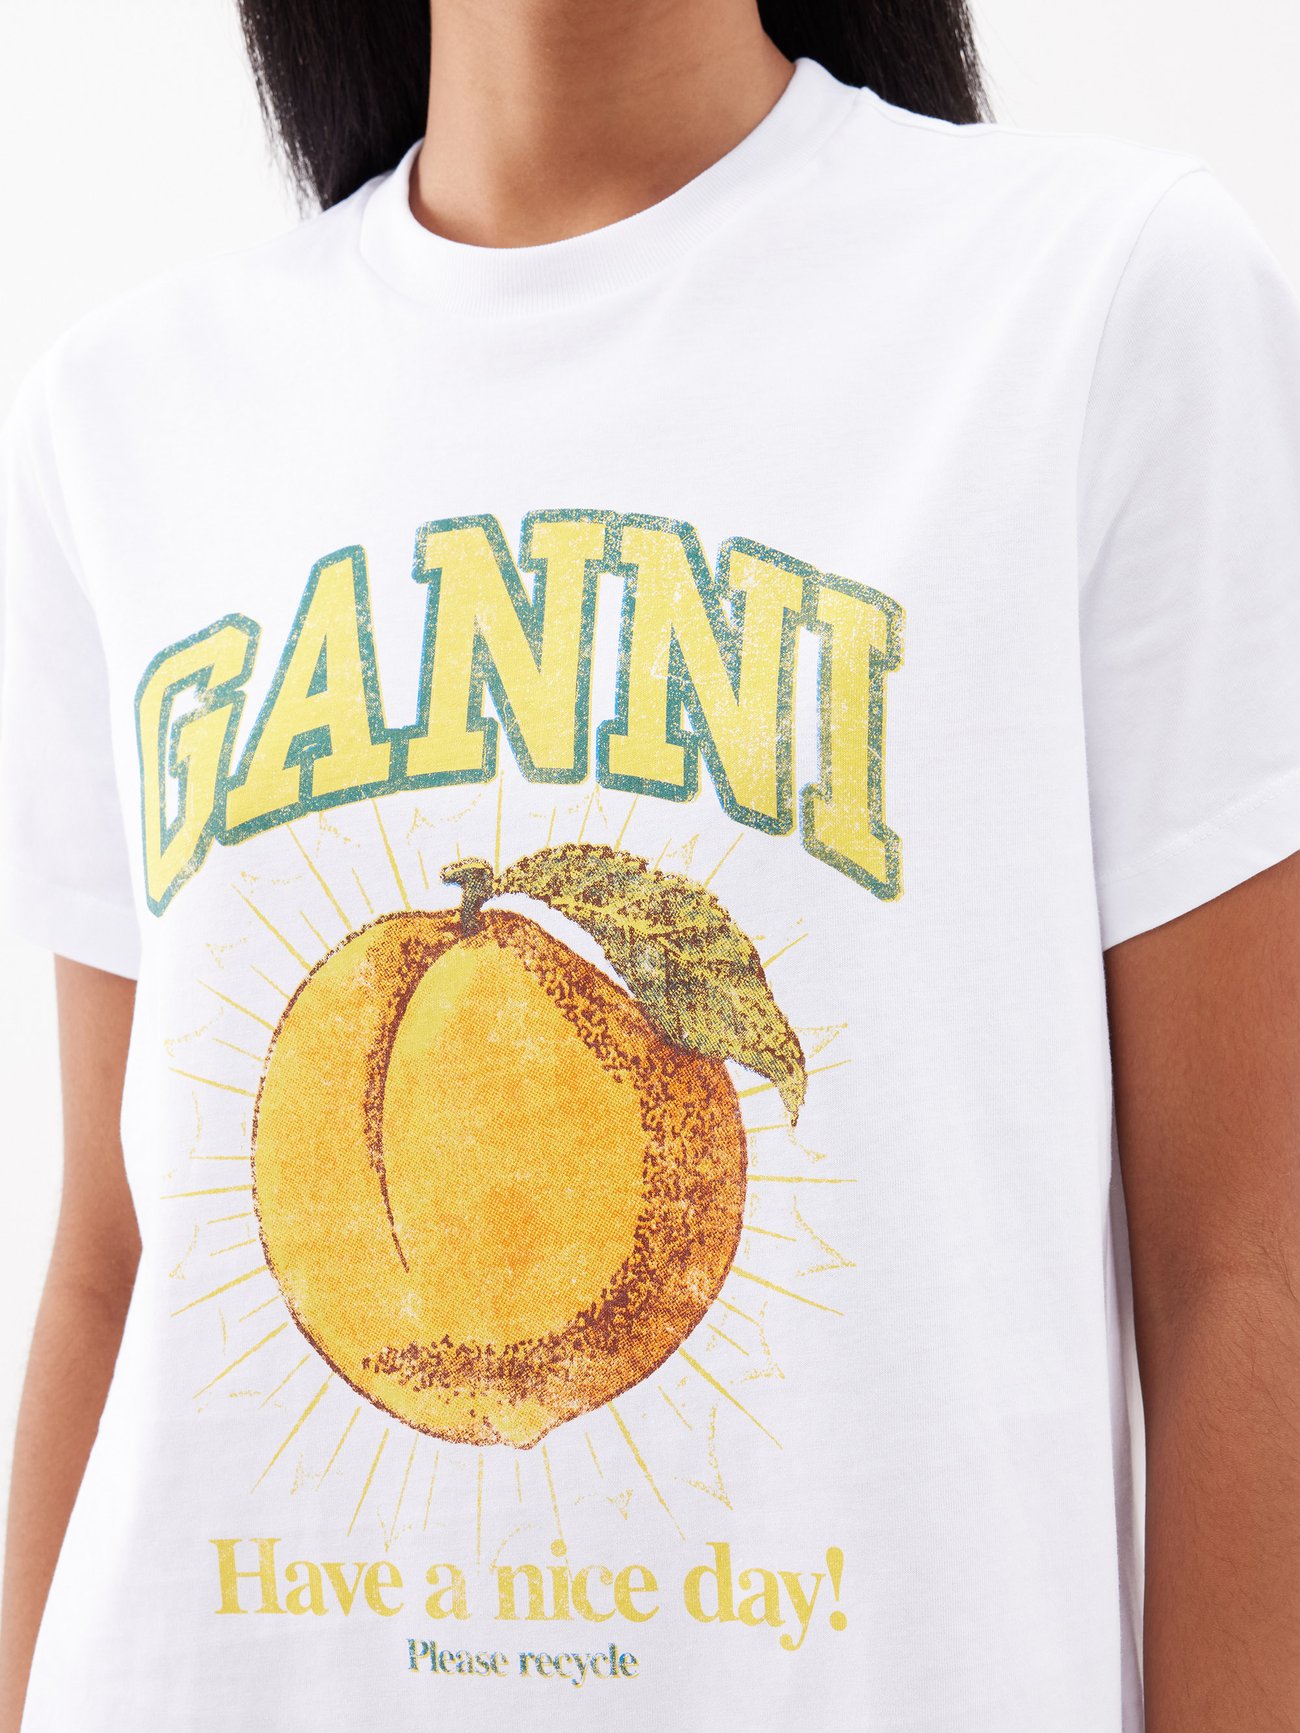 Ganni Peach T-Shirt - White